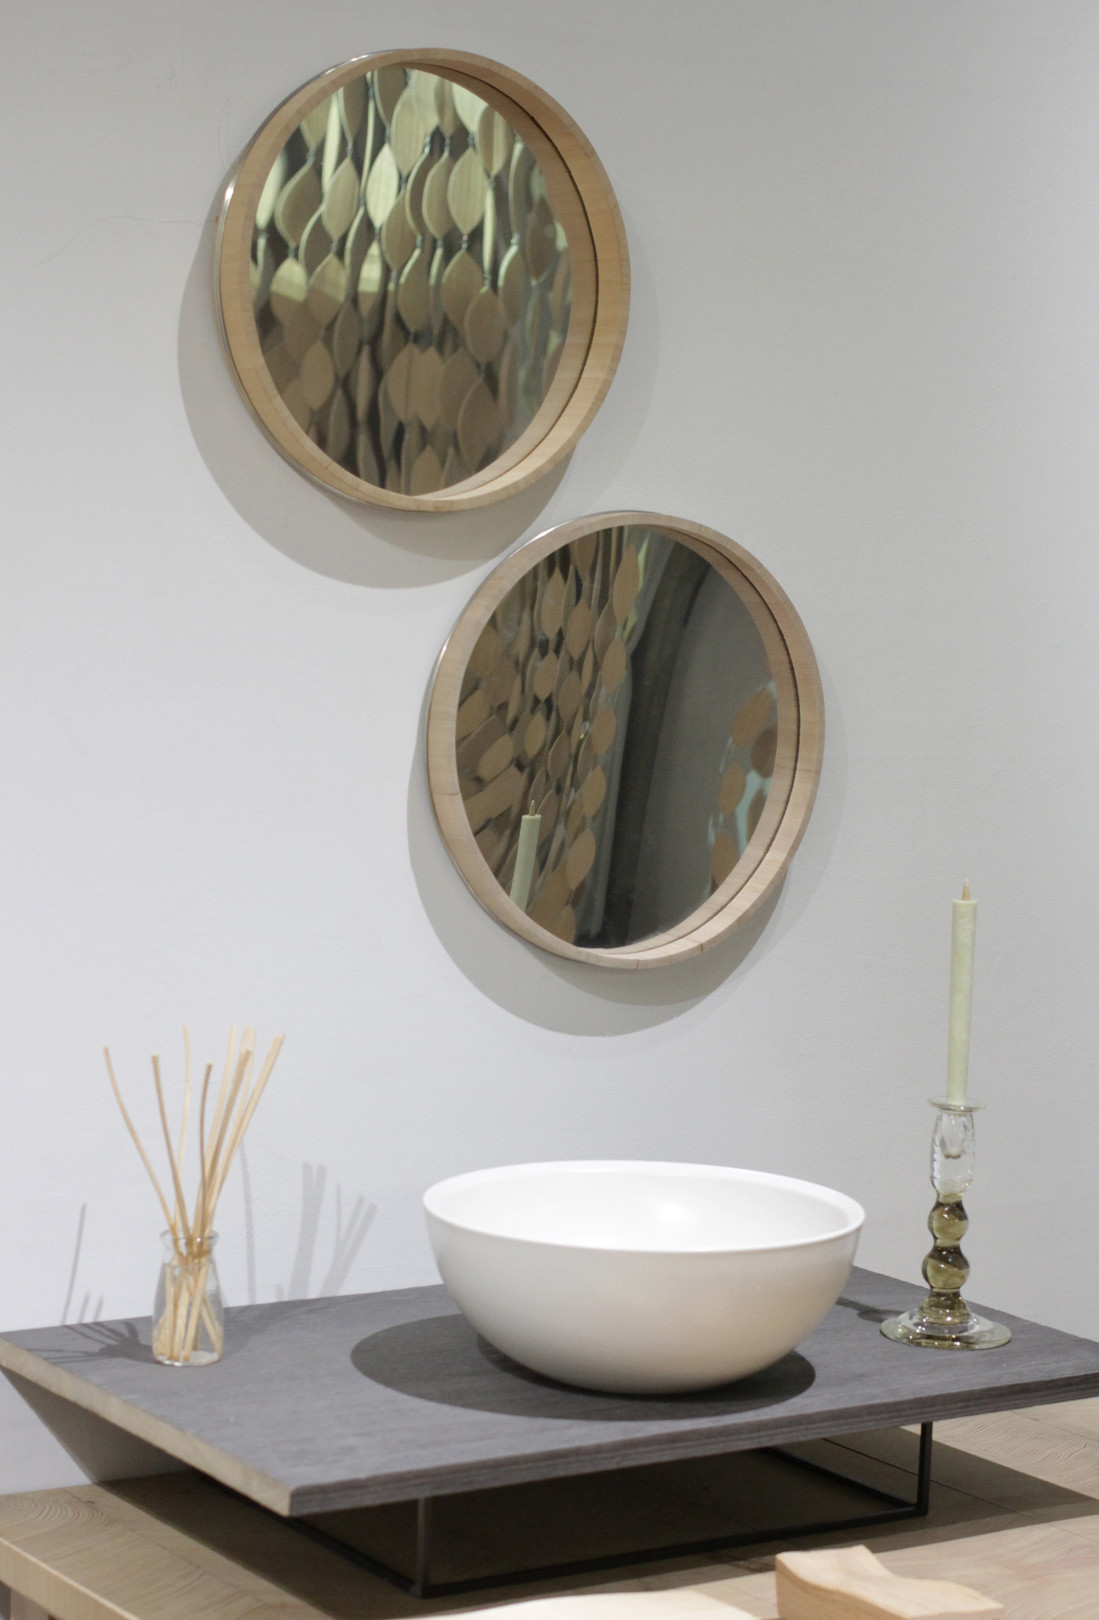 手水鉢には桶枠を活かした姿鏡。展示用に作られた鏡は、キギの植原亮輔さん、渡邉良重さんも絶賛!